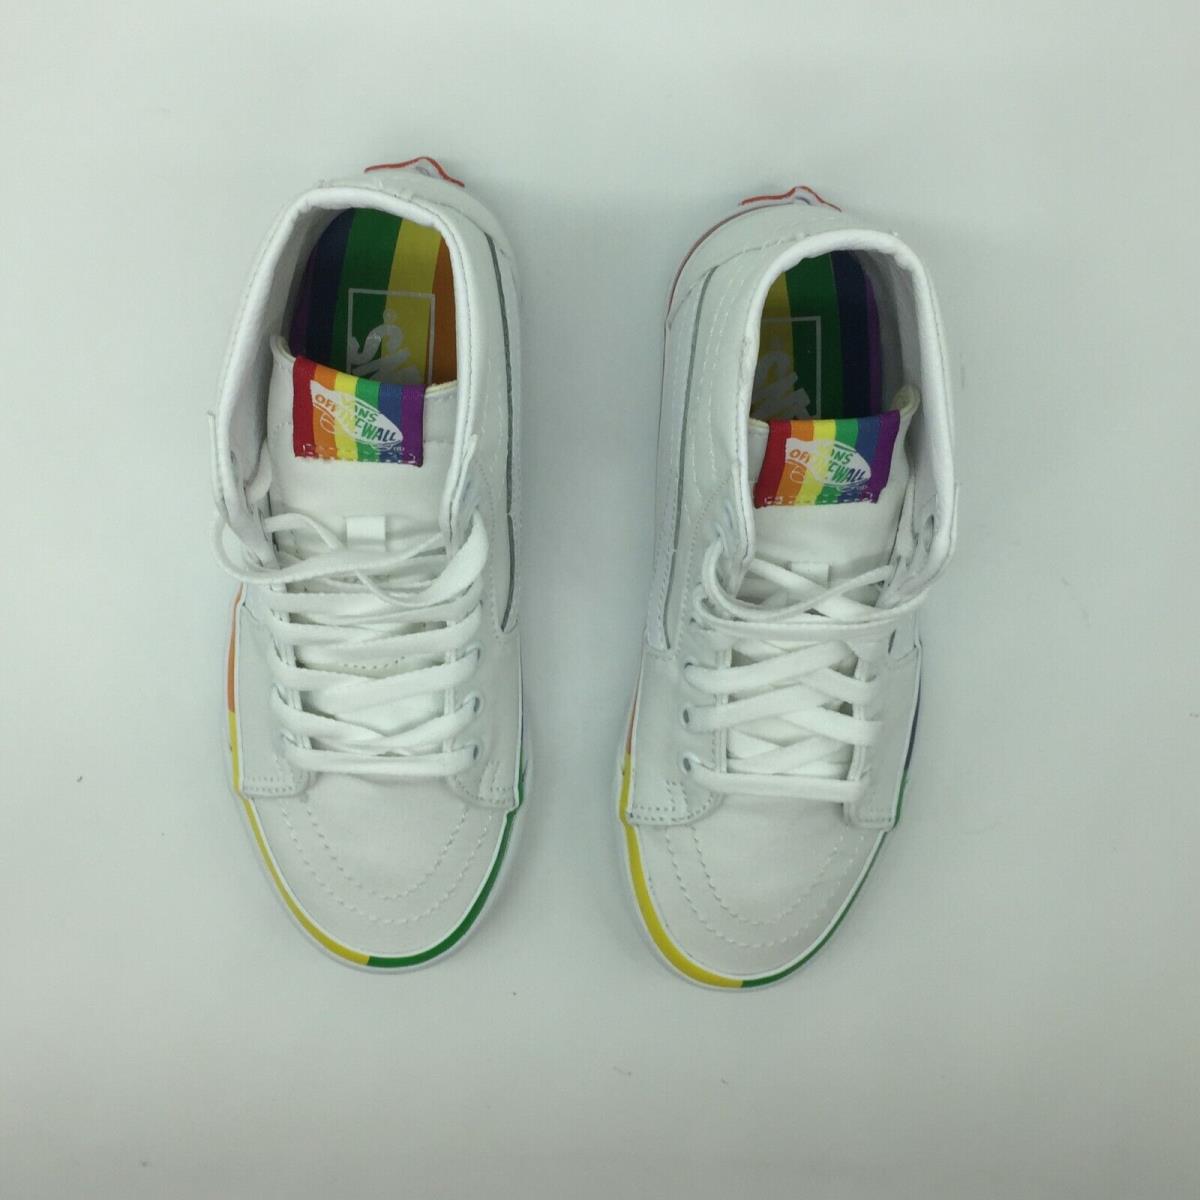 Vans shoes  - Multicolor 1